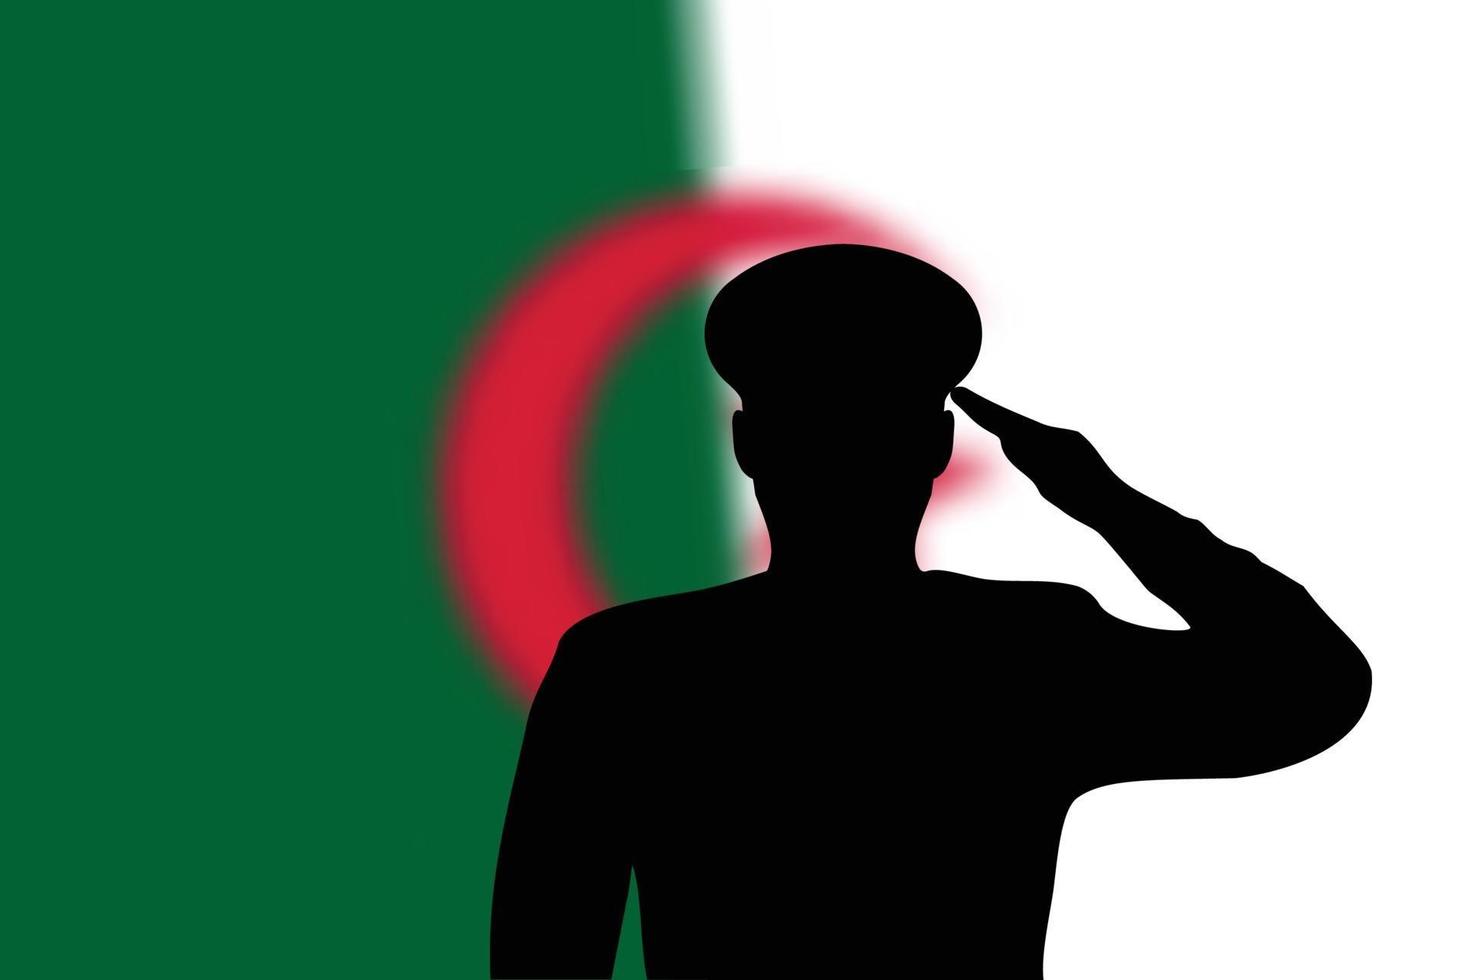 Lötsilhouette auf Unschärfehintergrund mit Algerien-Flagge. vektor